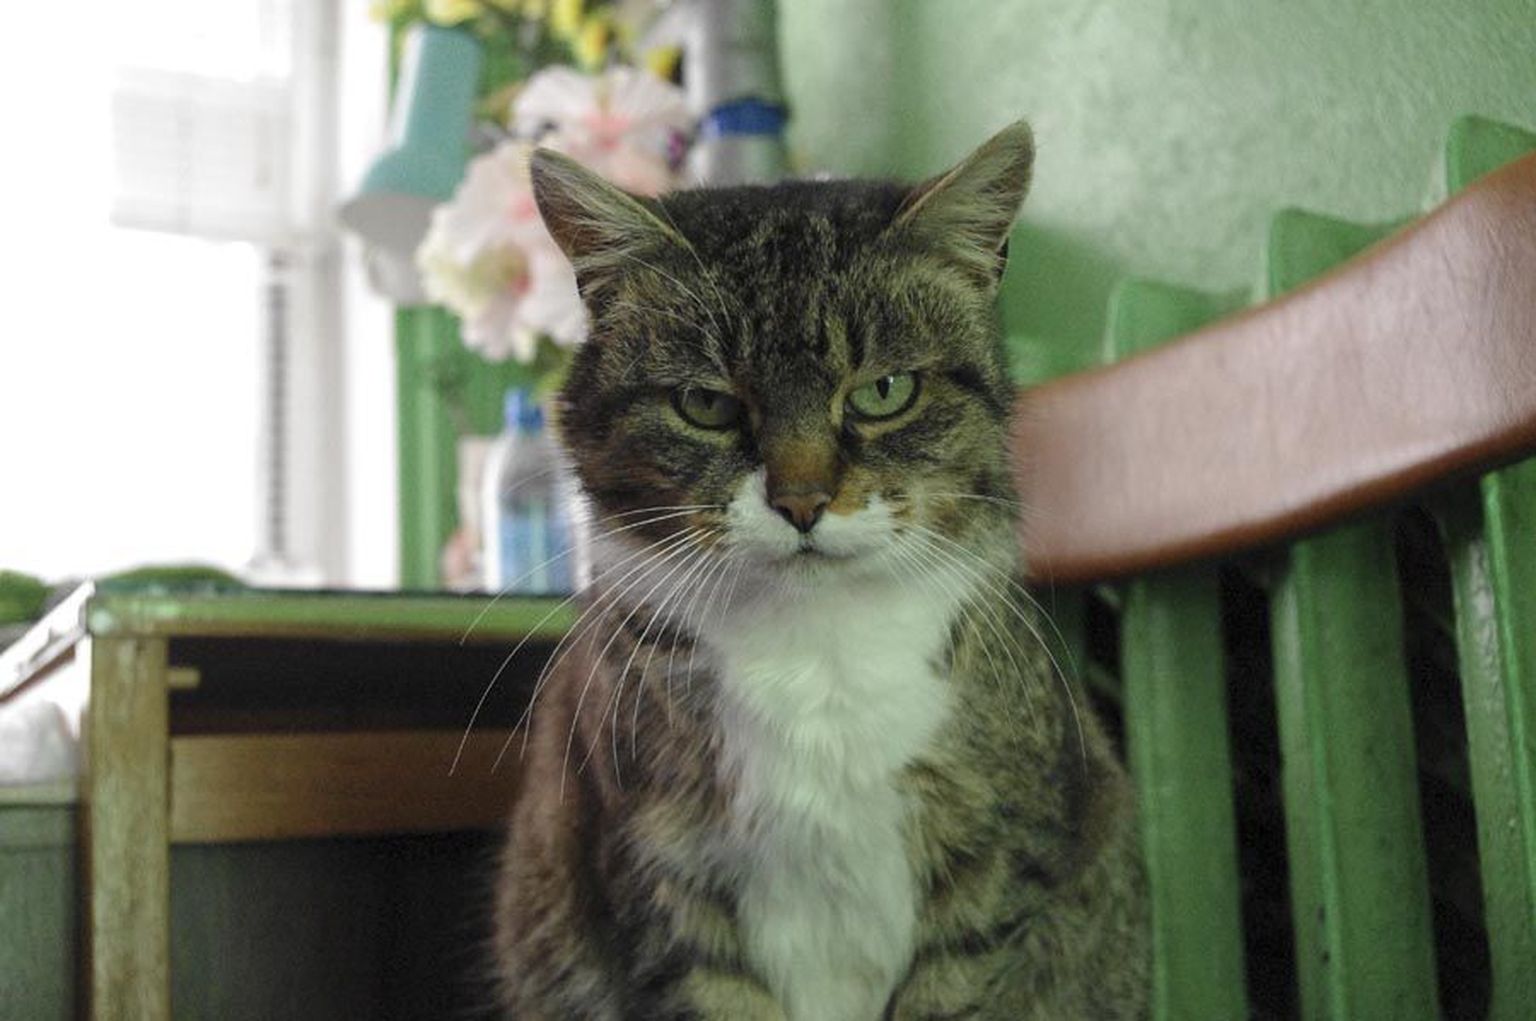 Umbes kaheksa aastat tagasi ilmus Karksi-Nuia turule noor ja metsik kass. Nüüd elab ta turukontoris head elu ning laseb end silitada nii müüjatel kui ostjatel.